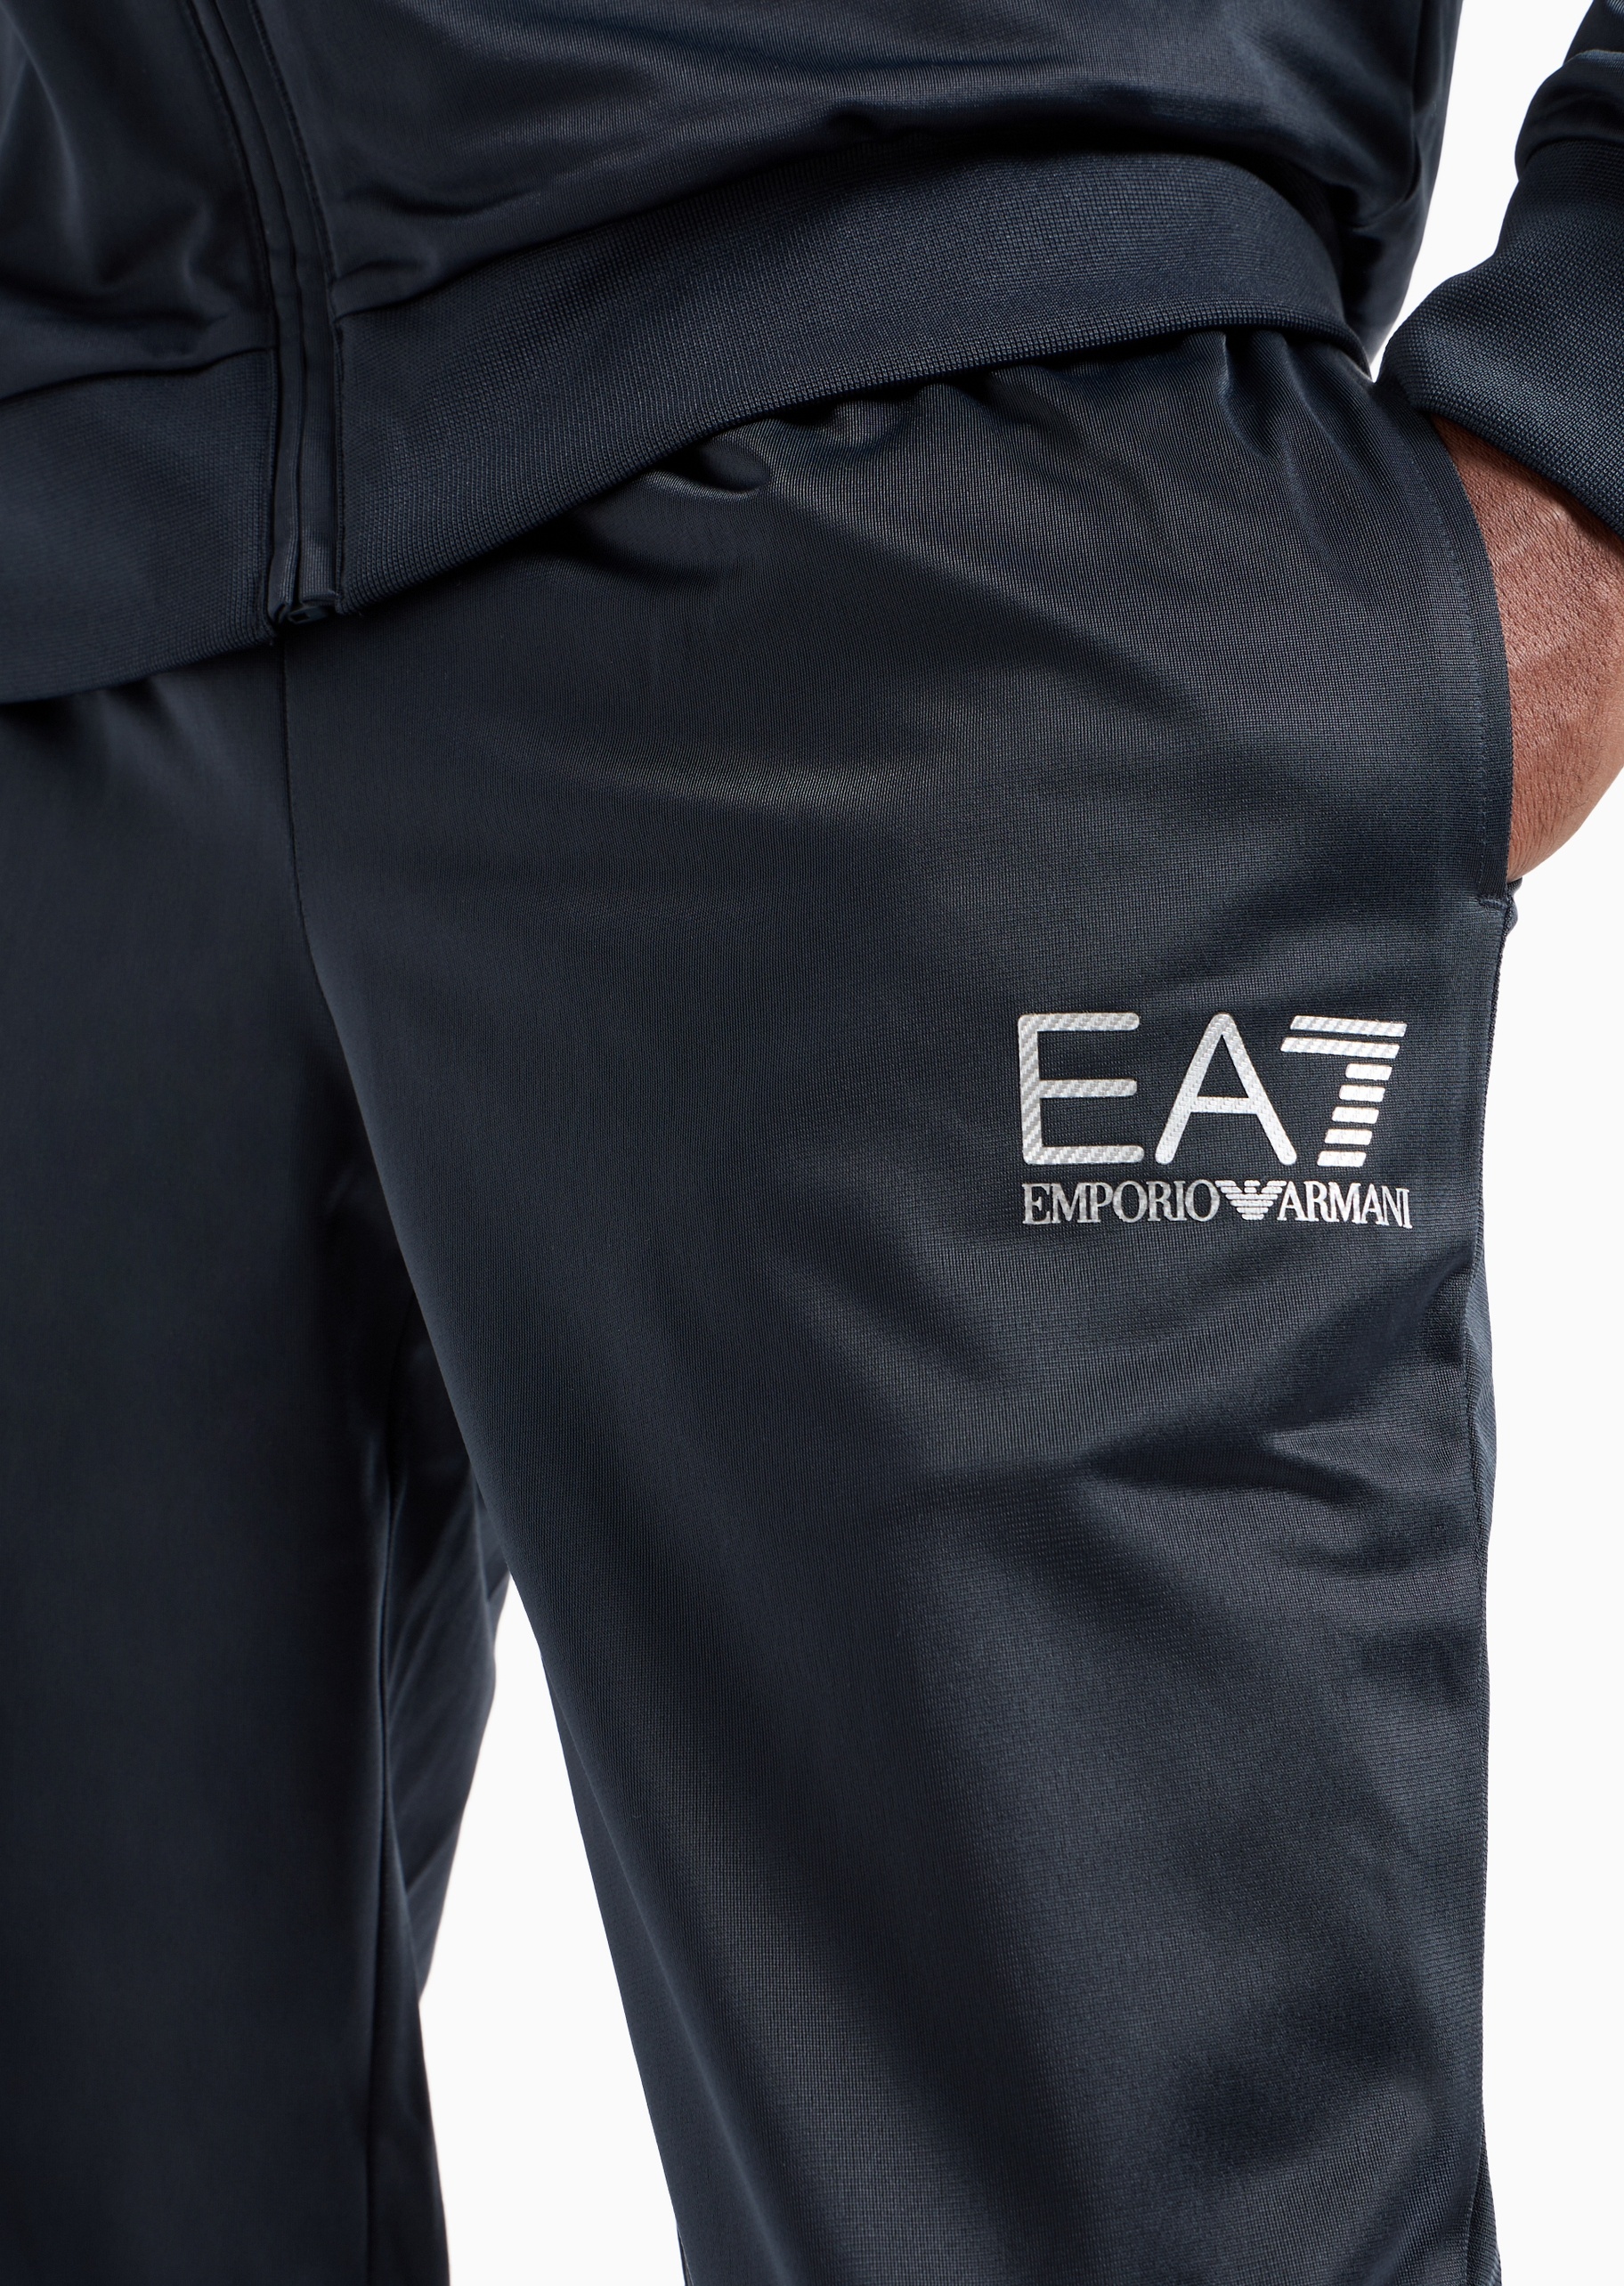 EA7 男士立领开衫束脚卫裤印花休闲运动套装